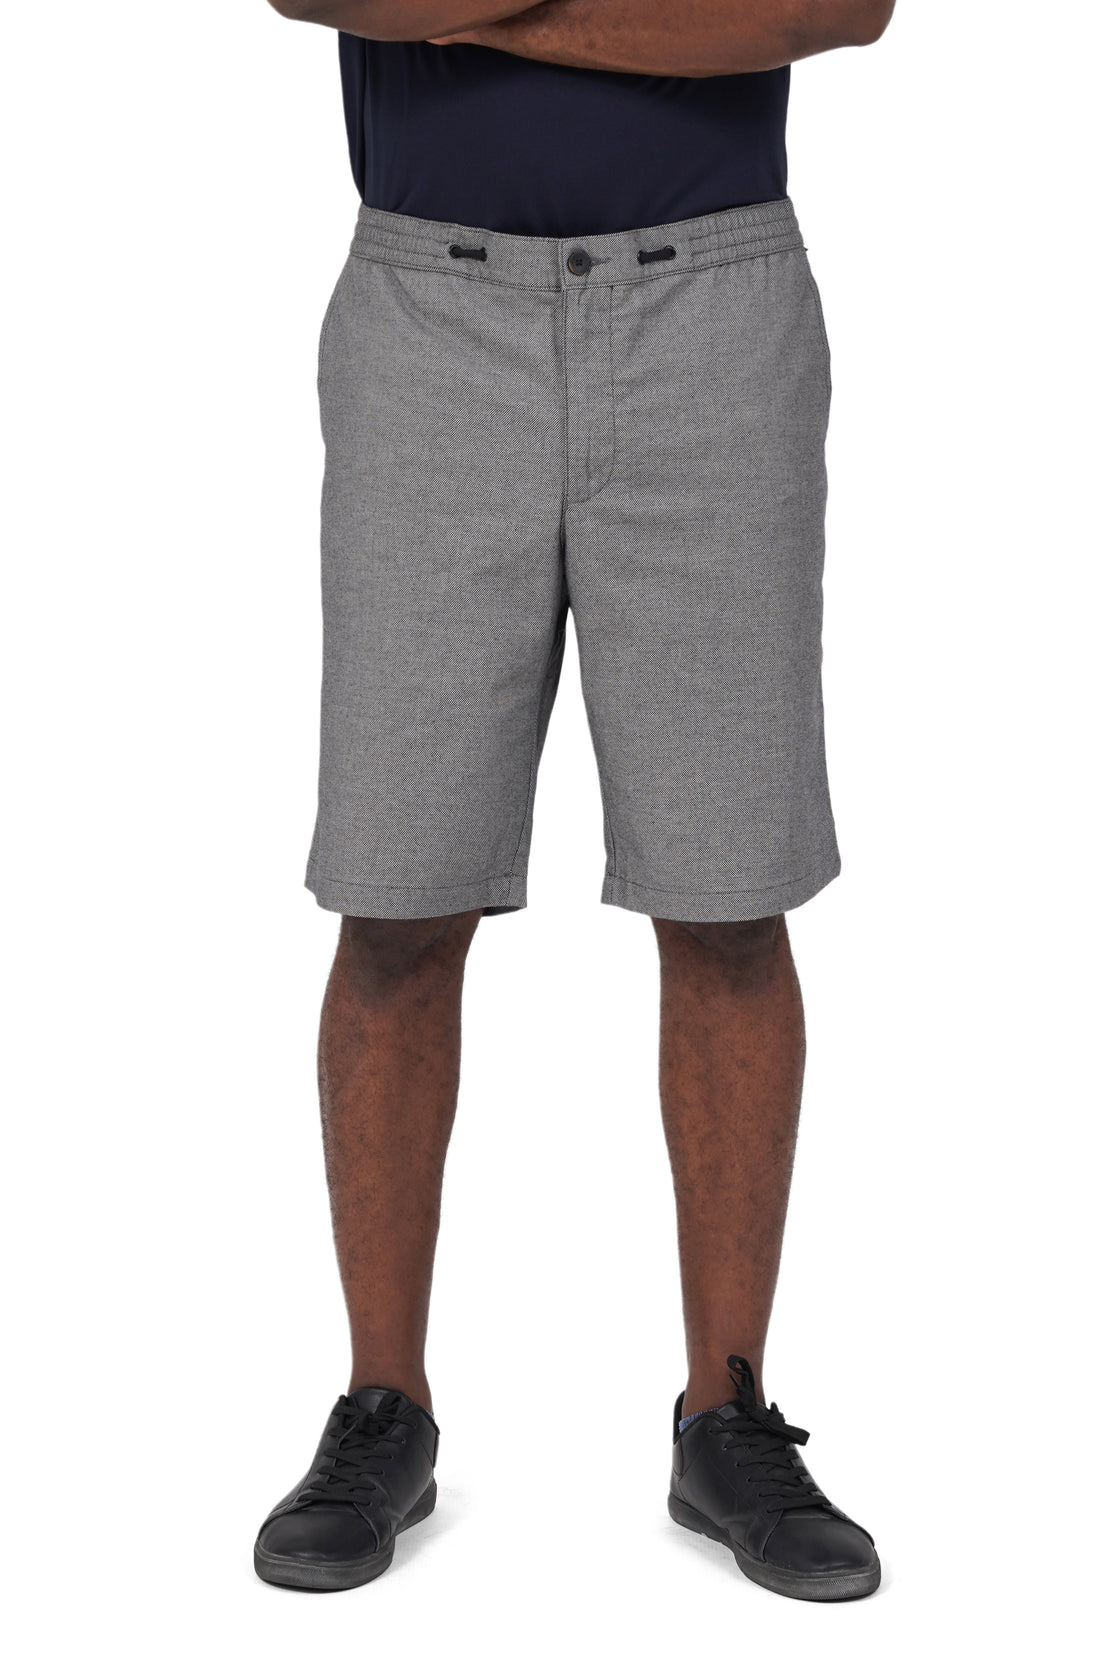 16 Shades Bermuda Shorts